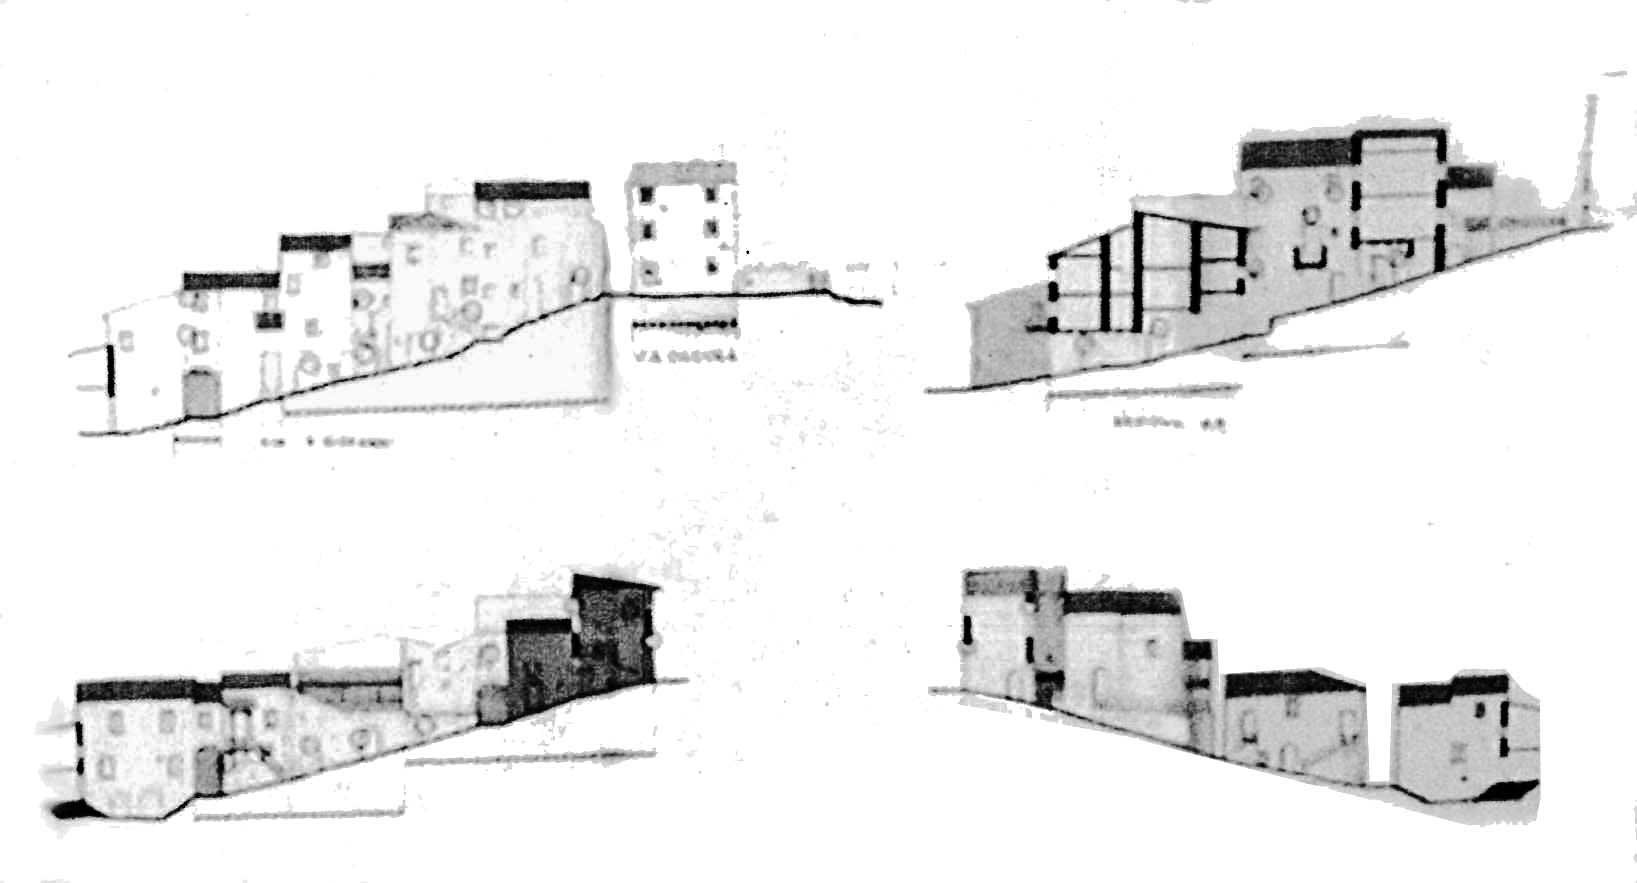 8 - Piano di Recupero del patrimonio edilizio esistente del Comune di Vallo di Nera (PG); con L. Triggiani e S. Terenzi - Sezioni della località Vallo